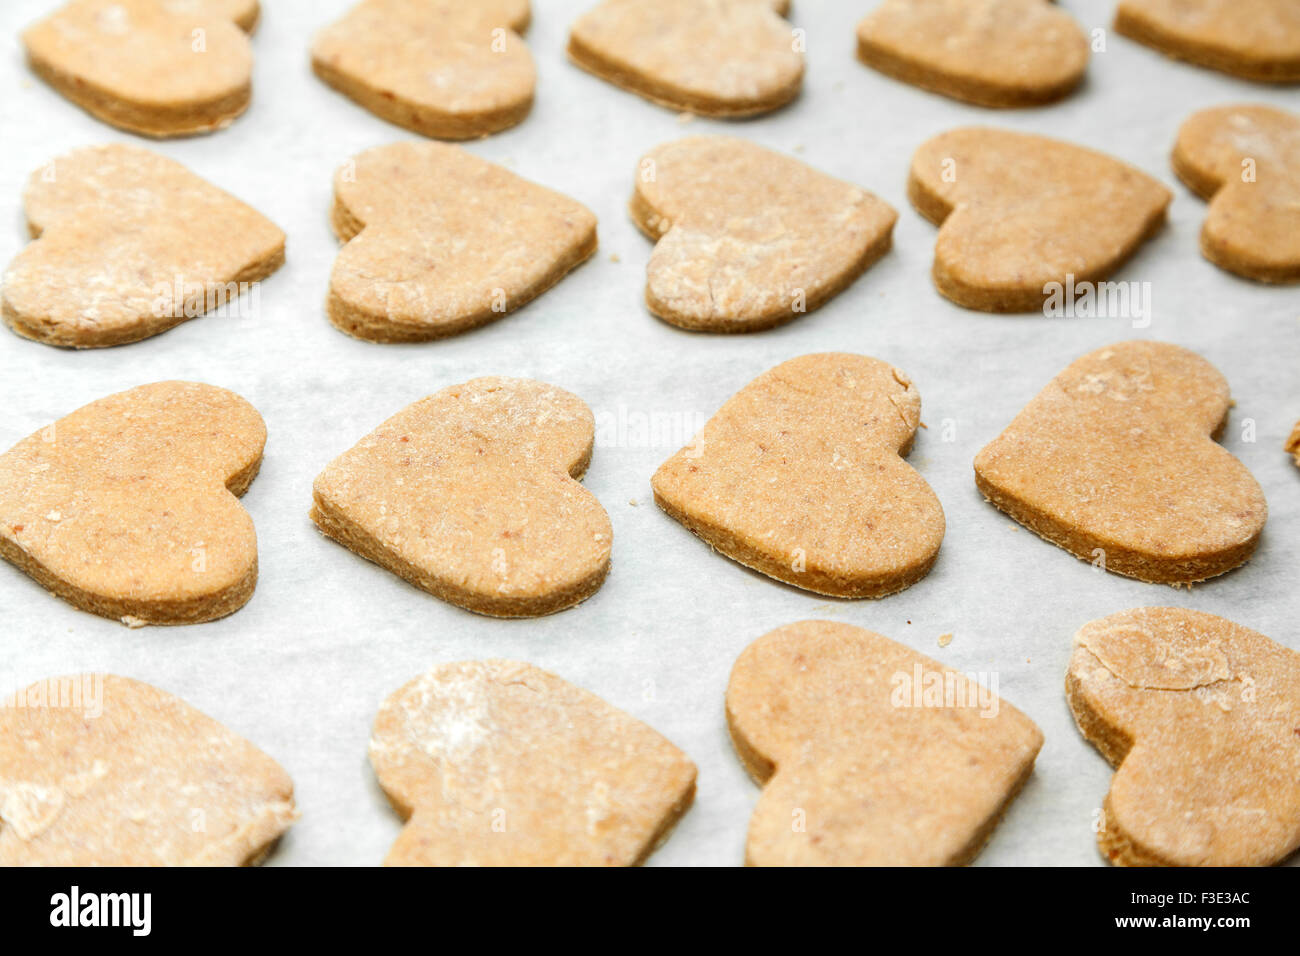 Les cookies en forme de cœur sur papier cuisson Banque D'Images